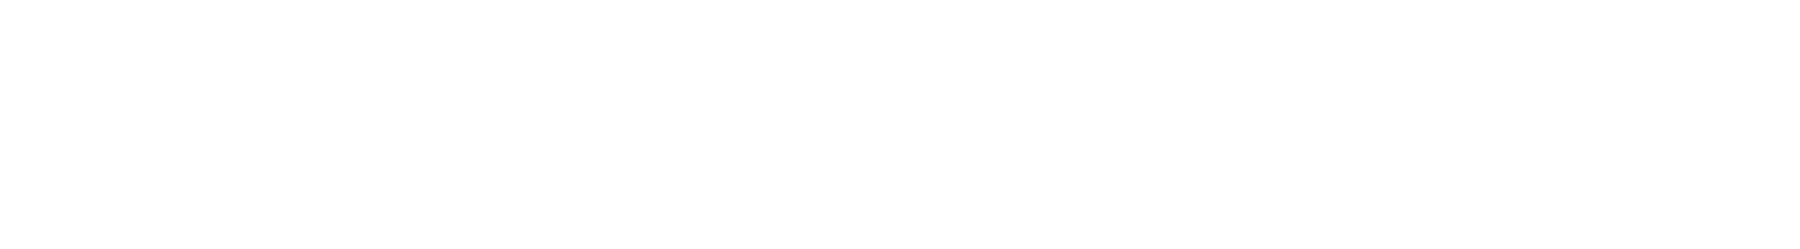 Black and White University of Washington Logo - Horizontal Logo | Marketing & Creative Services | The George ...